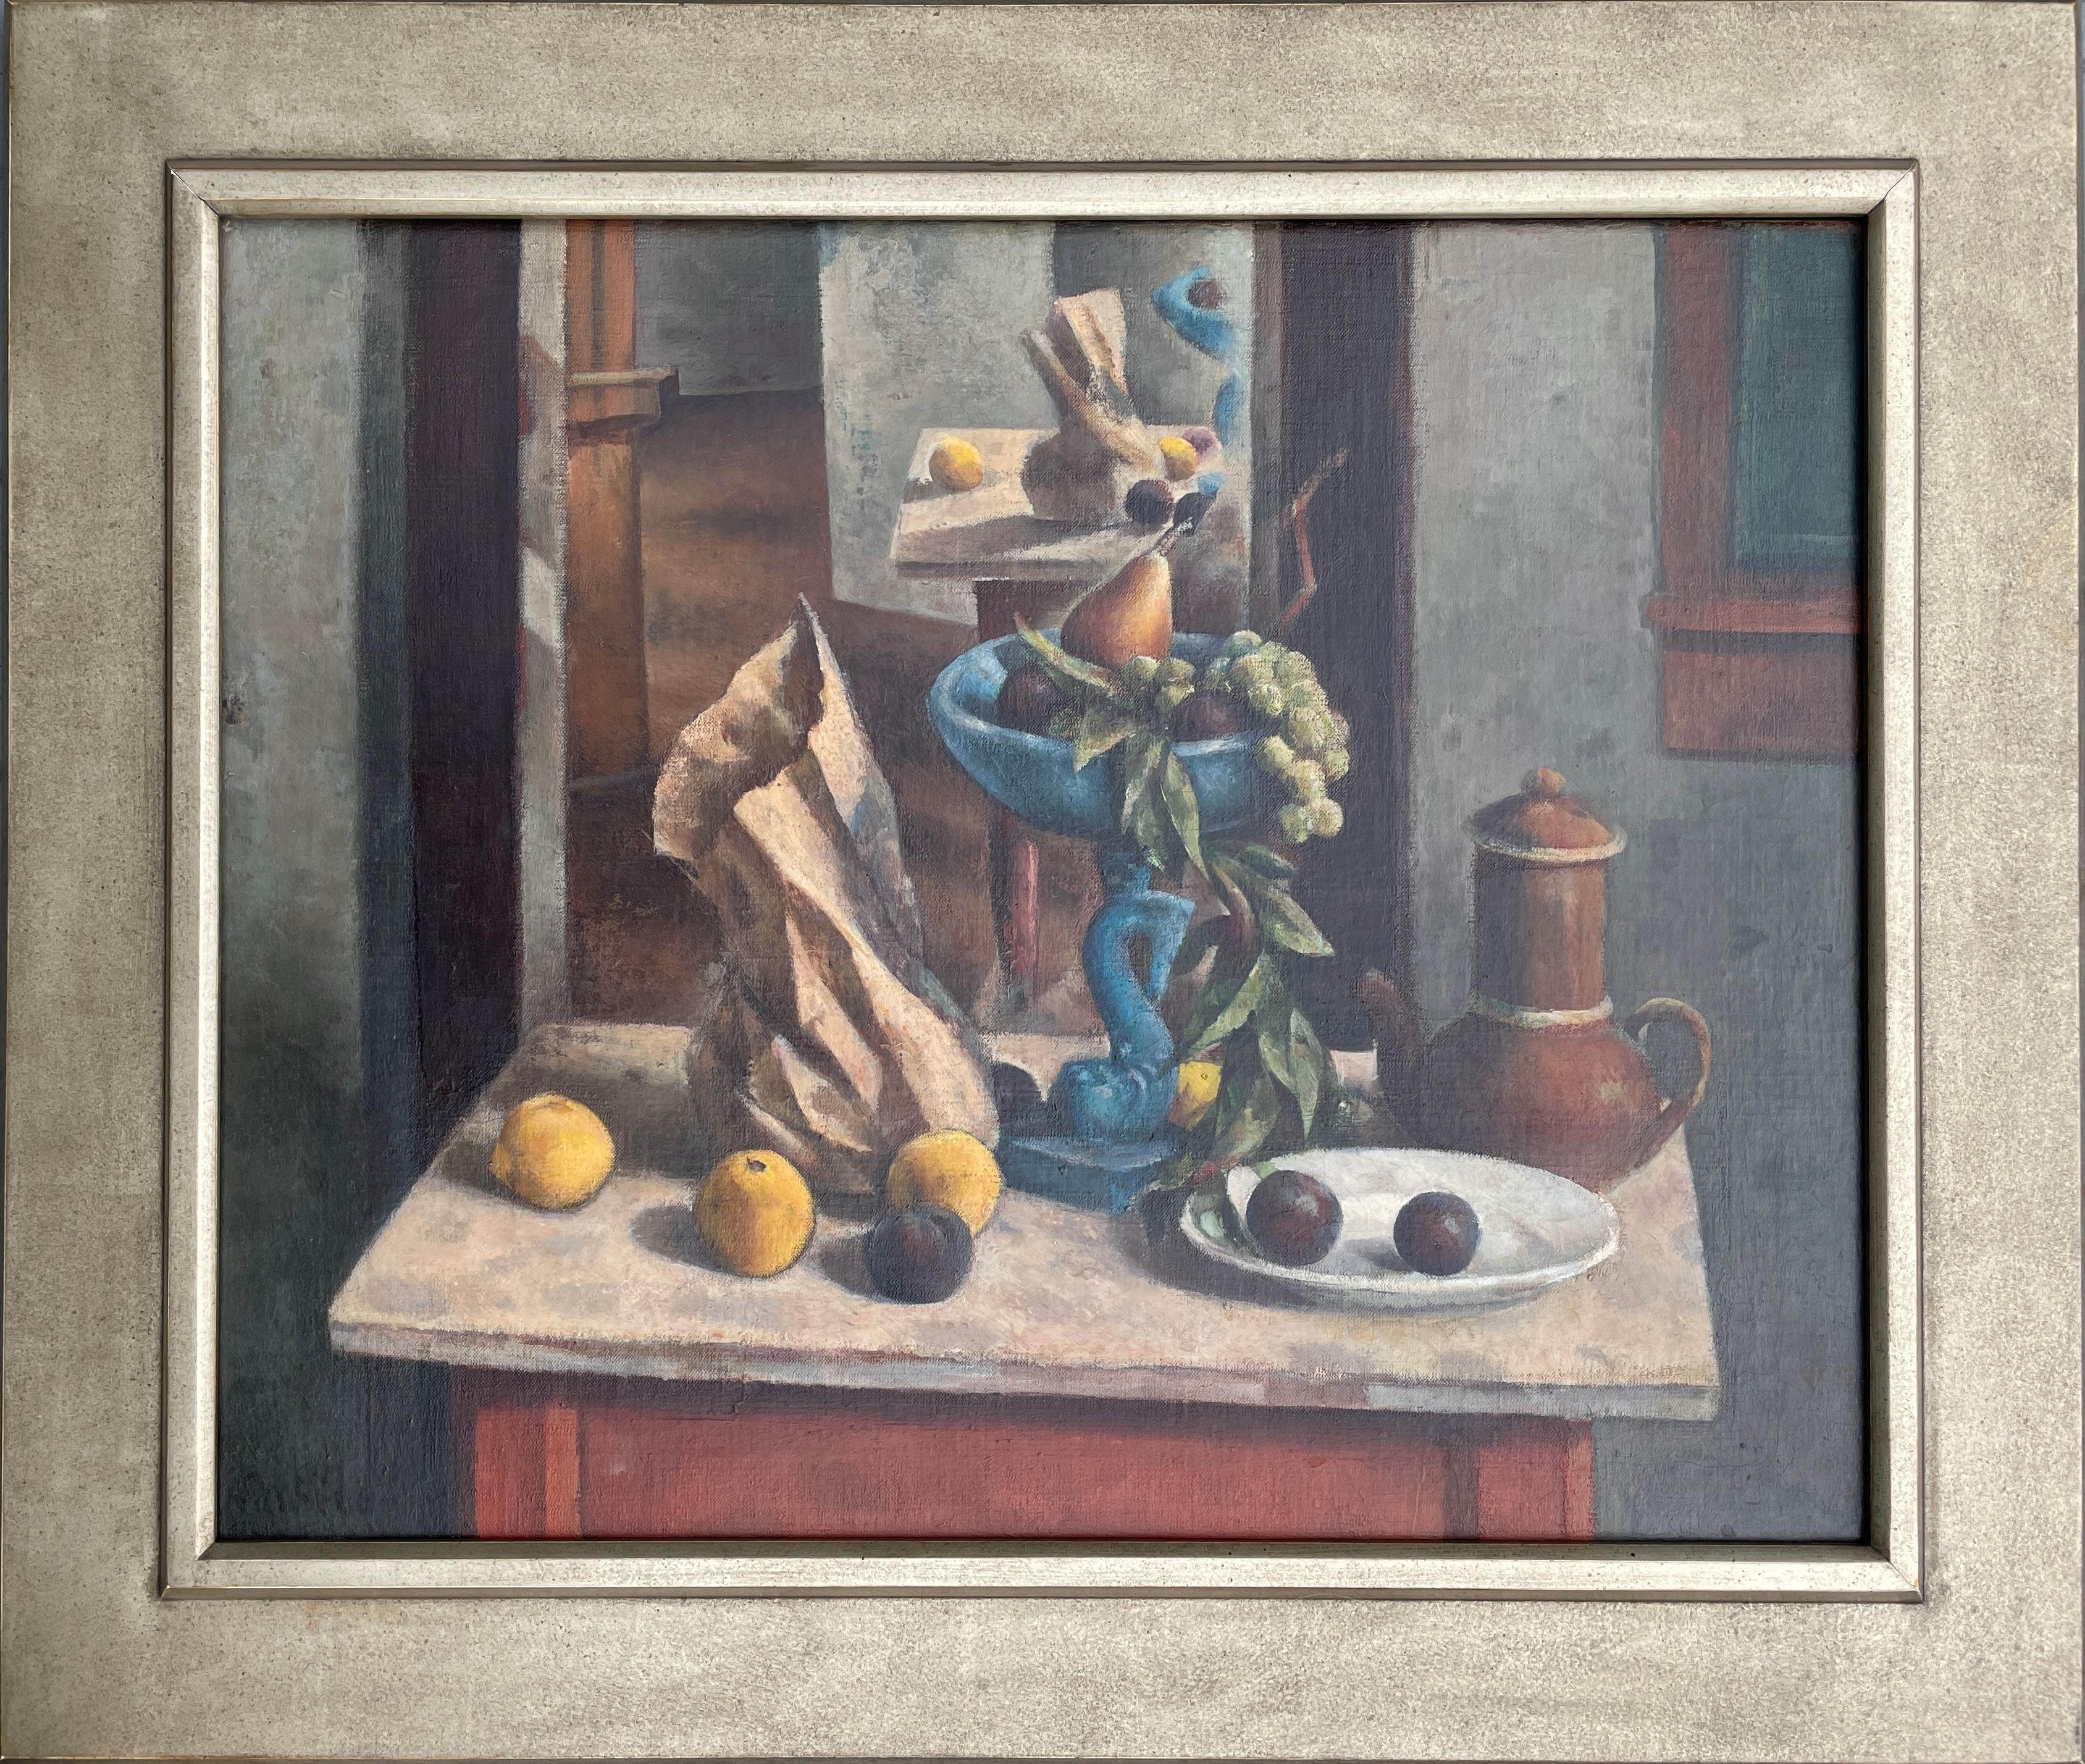 Exceptionnelle nature morte moderniste de Henry Lee McFee. 

Le compotier bleu (1930-31)
Huile sur toile
24" x 30"
33" x 39" x 2 ¼" encadré
Signé "McFee" en bas à gauche

Provenance : Don de l'artiste au voisin Mrs. Clarence E. Oliver,